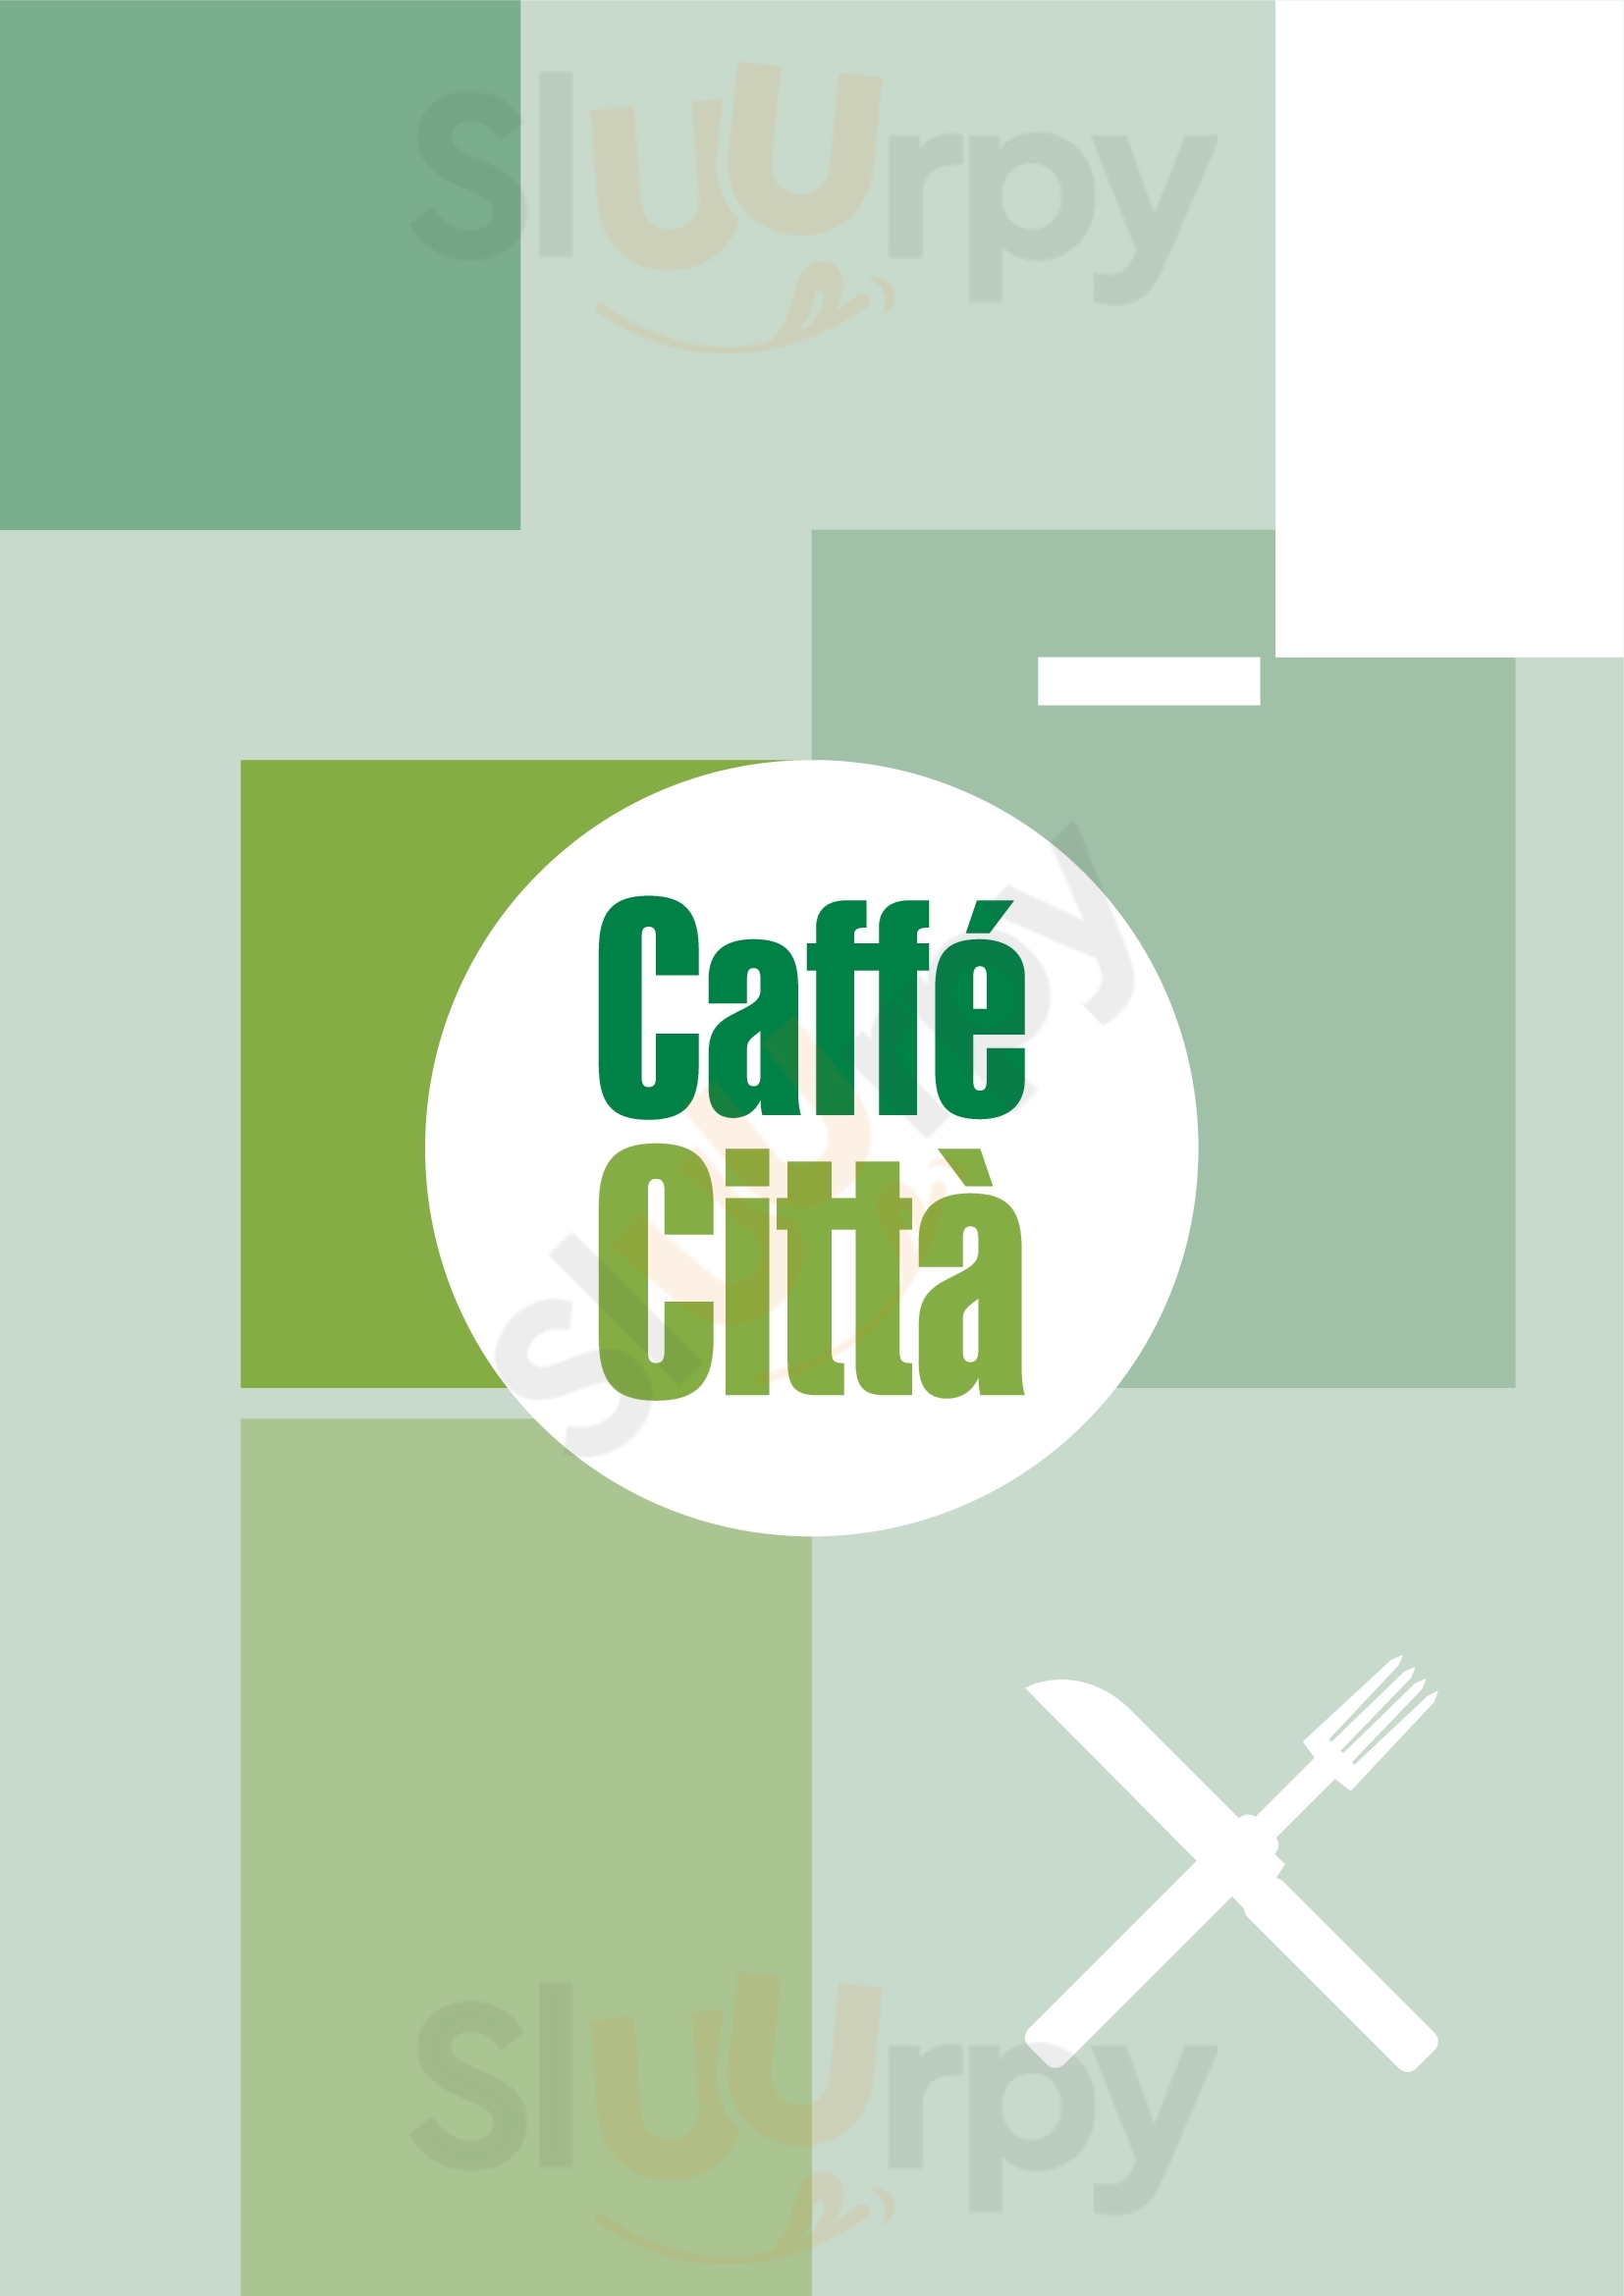 Caffe Citta Bucharest Menu - 1